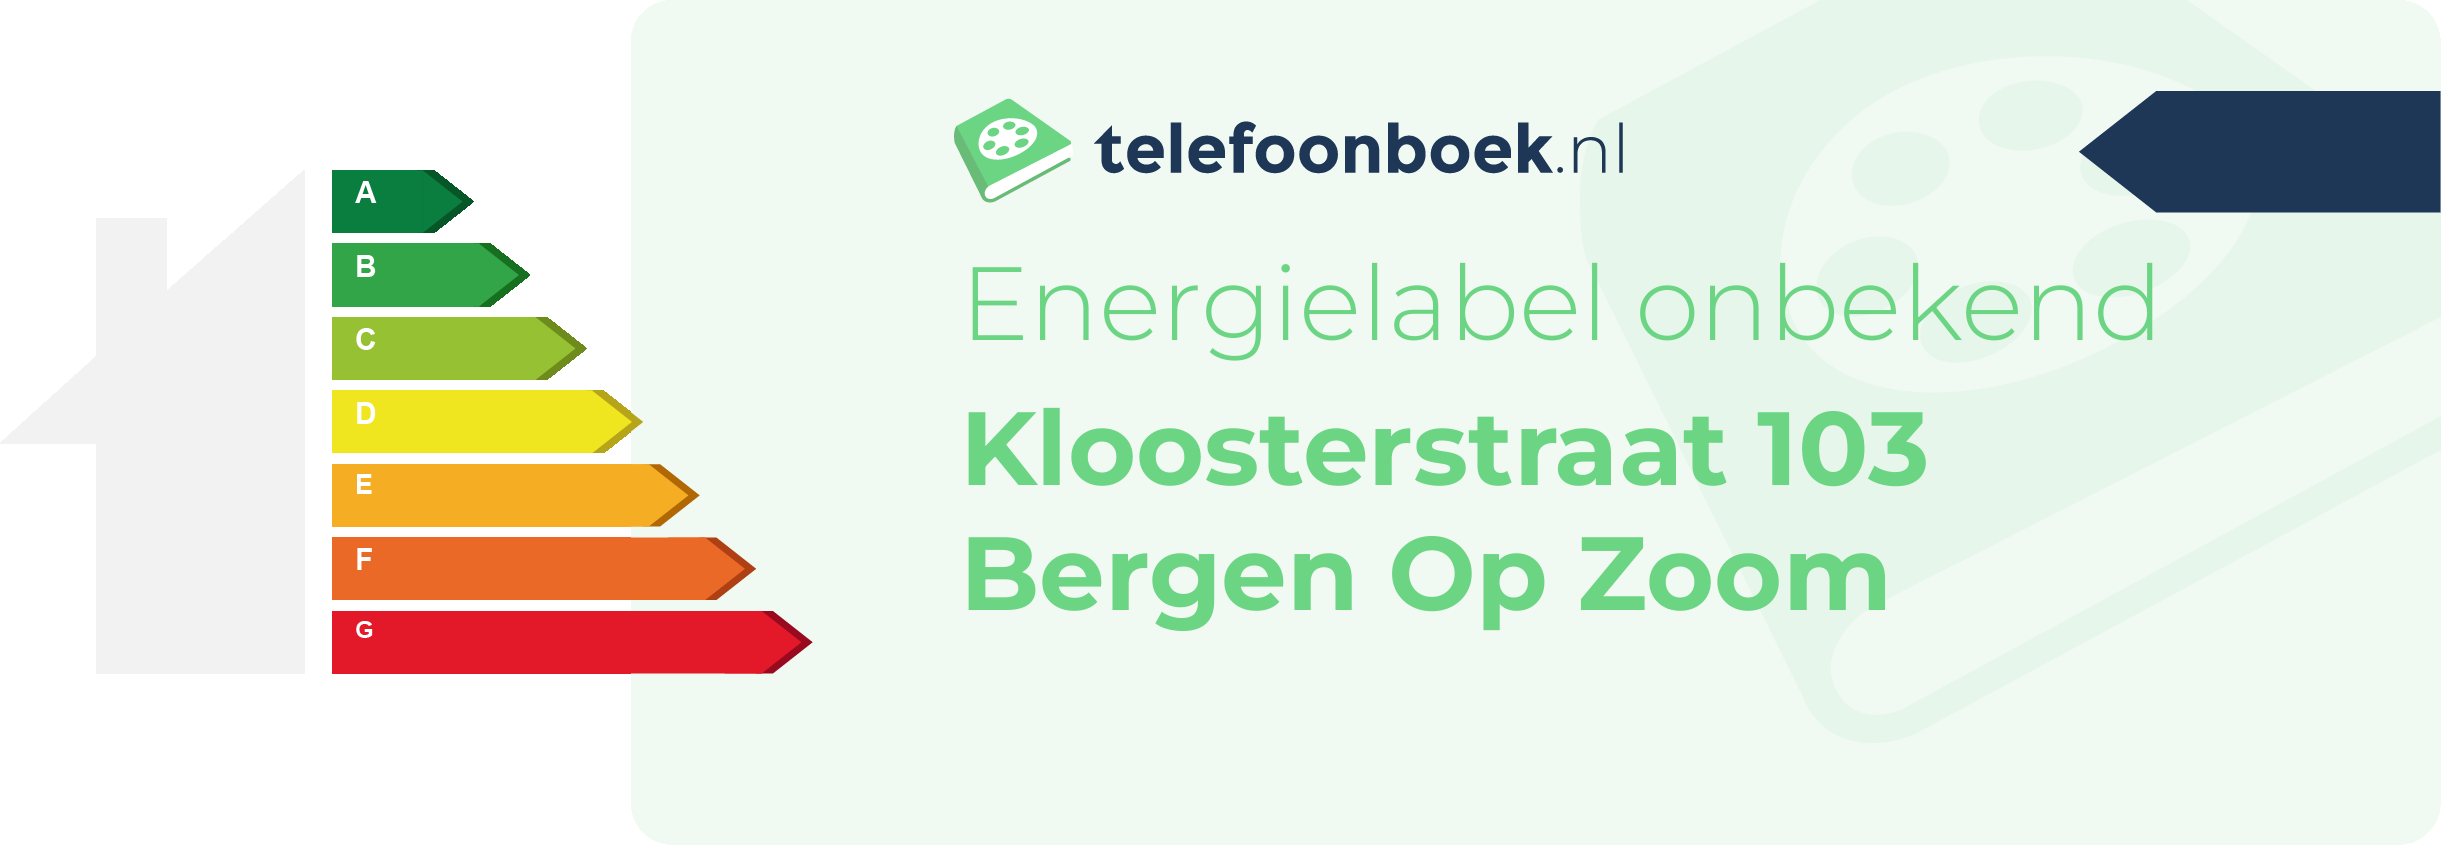 Energielabel Kloosterstraat 103 Bergen Op Zoom